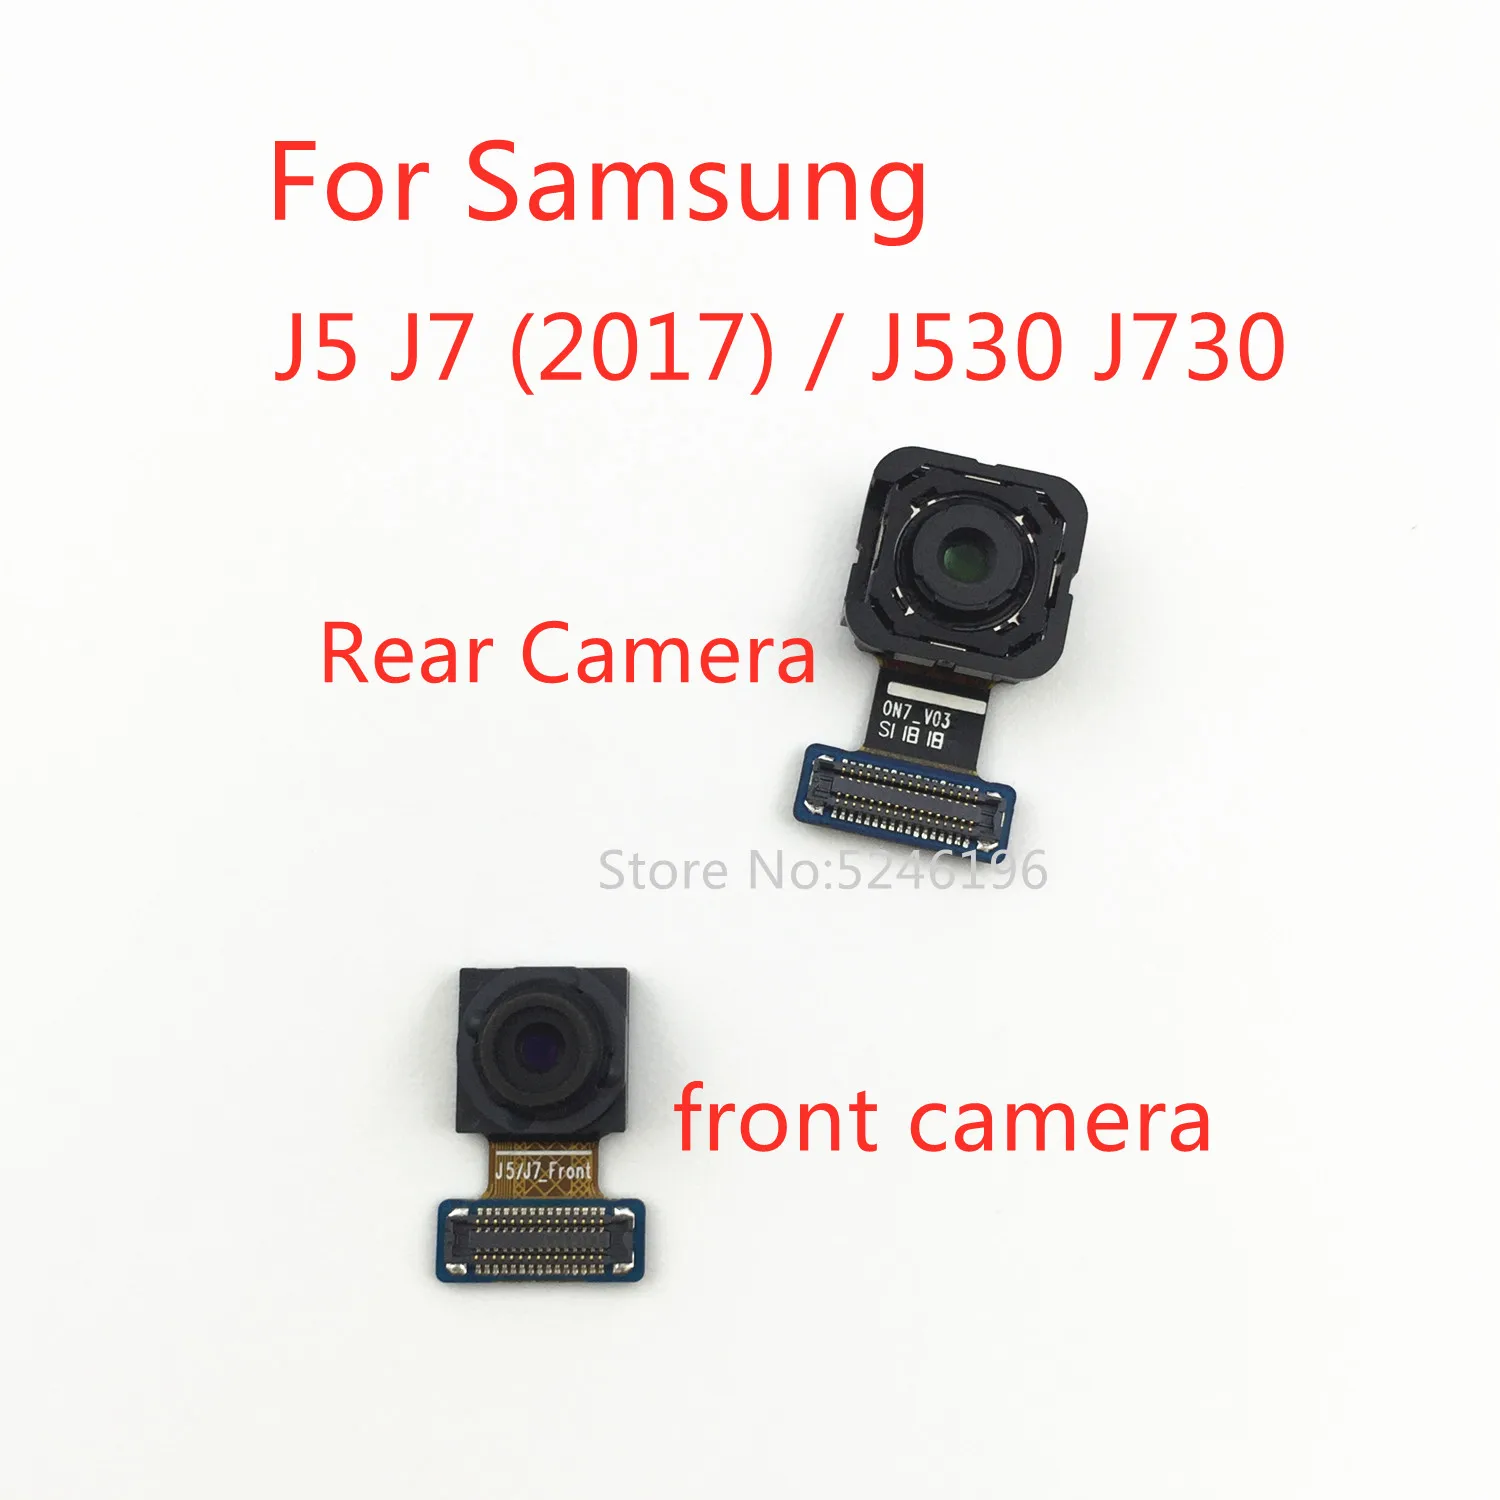 1psc עבור Samsung Galaxy j-7 J5 (2017) / J530 J730 חזרה המרכזי הגדול המצלמה האחורית, קדמי מצלמה מודול להגמיש כבלים המקורית להחליף את החלק. - 0